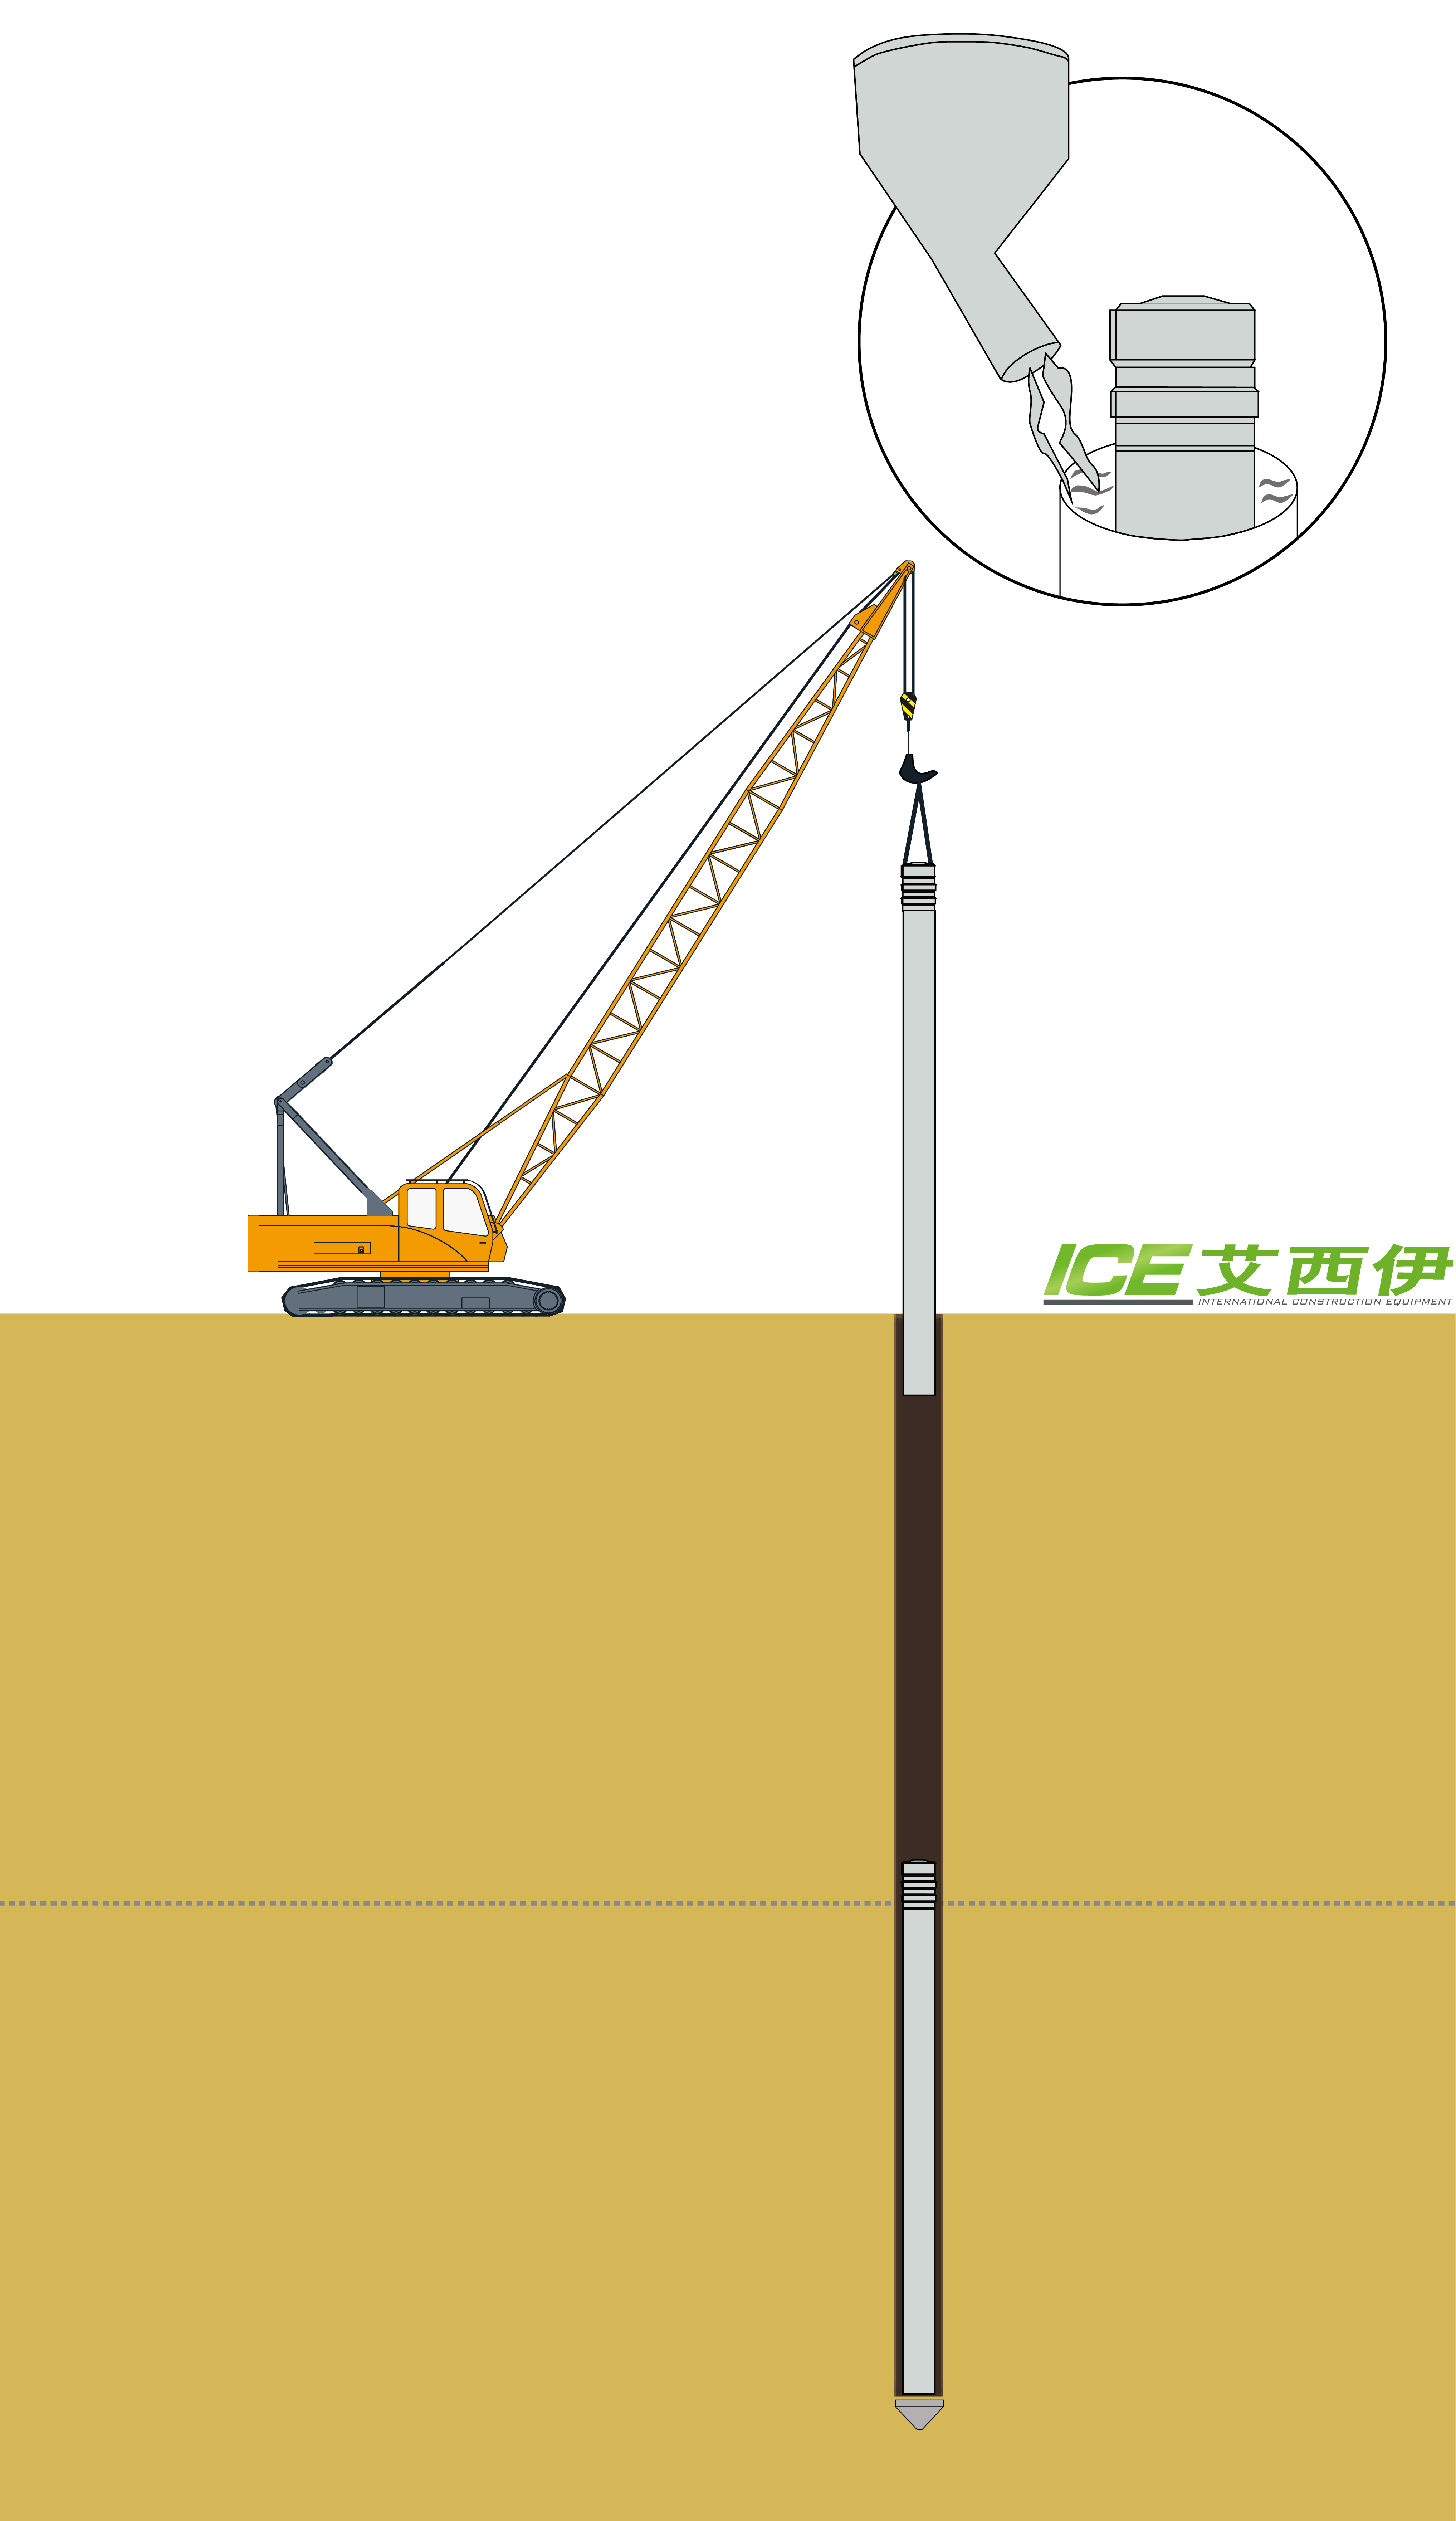 ICE，混凝土预制桩，基坑挖掘，液压振动锤，功法